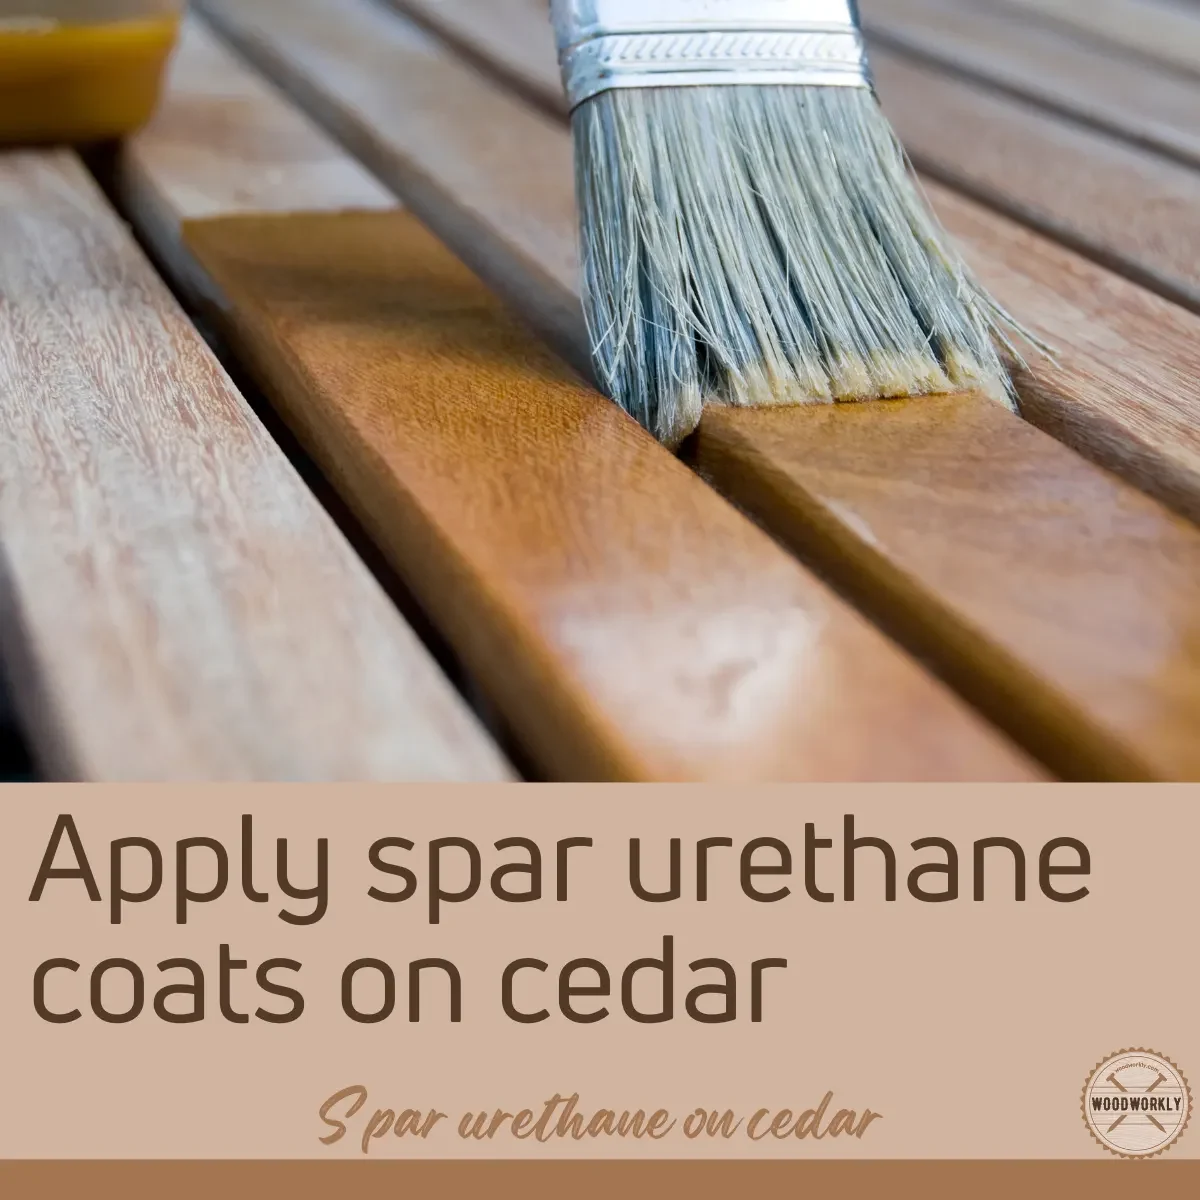 Apply spar urethane coats on cedar